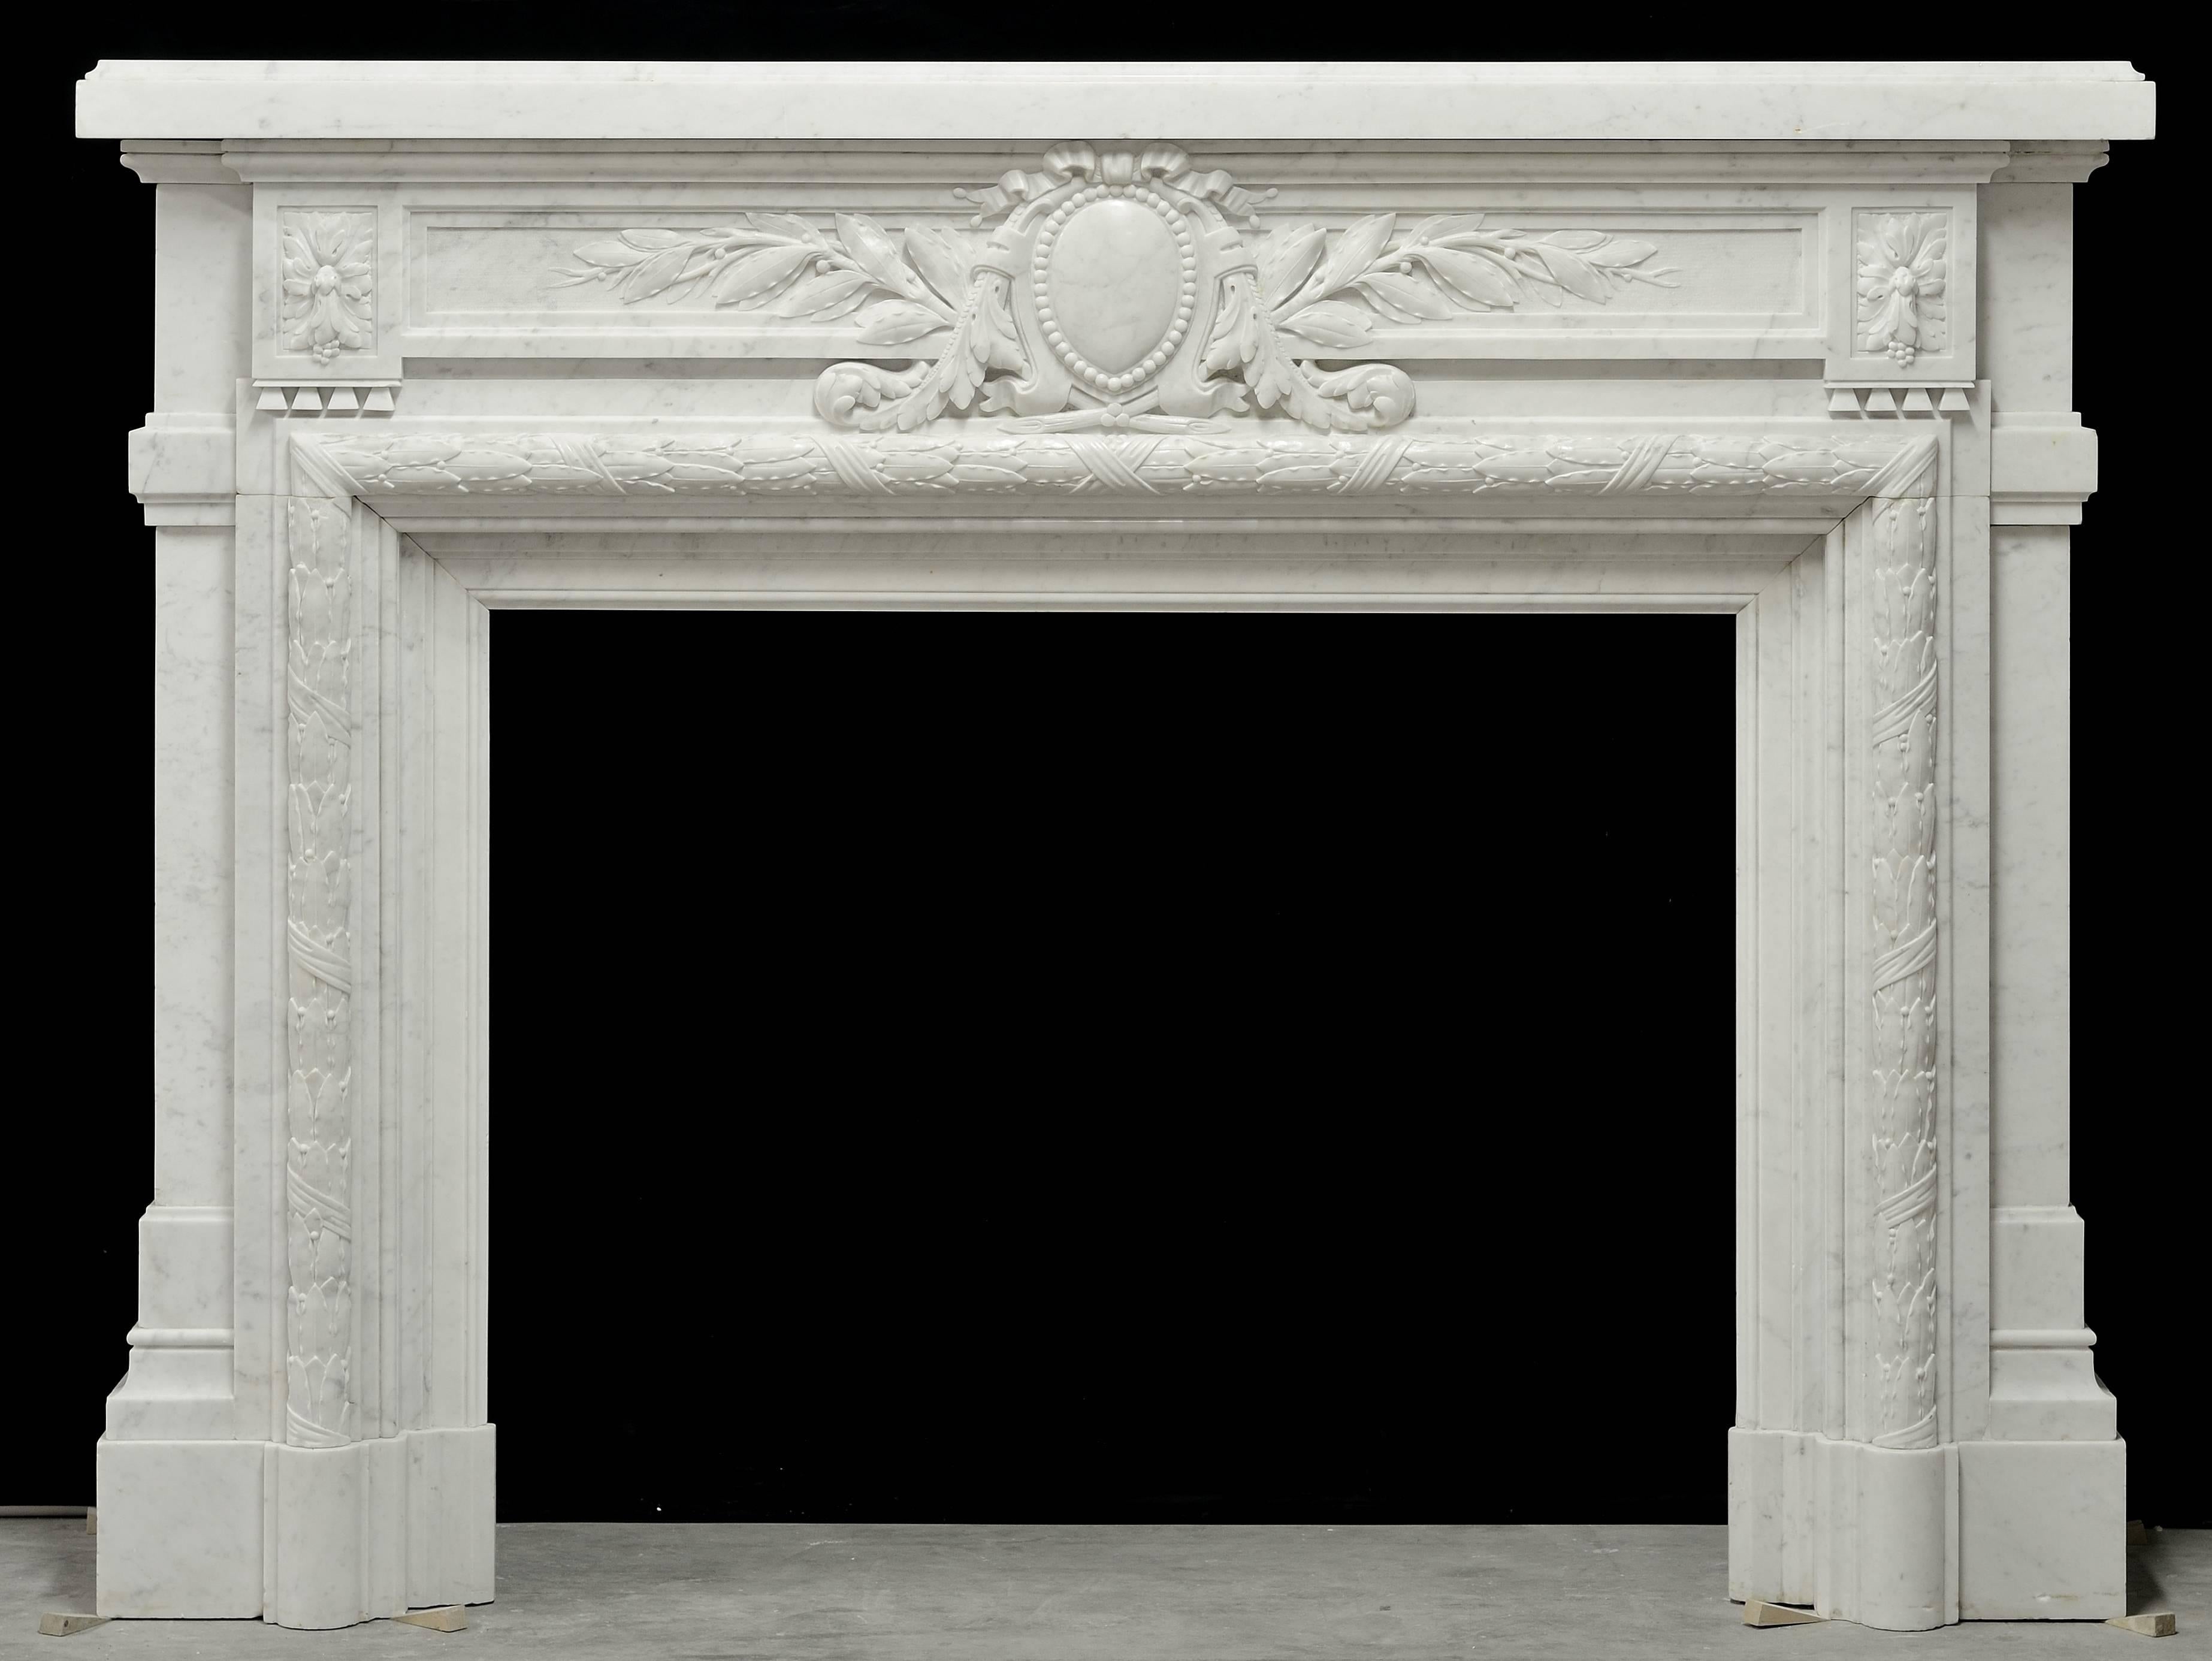 Ein wunderschön geschnitzter und einzigartiger französischer Kamin im Louis-XVI-Stil aus weißem Carrara-Marmor, 19. Jahrhundert.
Perfekter, tadelloser Zustand. Einbaufertig.

Maße der Öffnung: 36.02 x 44,09 Zoll. (91,5 x 112 cm) Höhe x Breite.